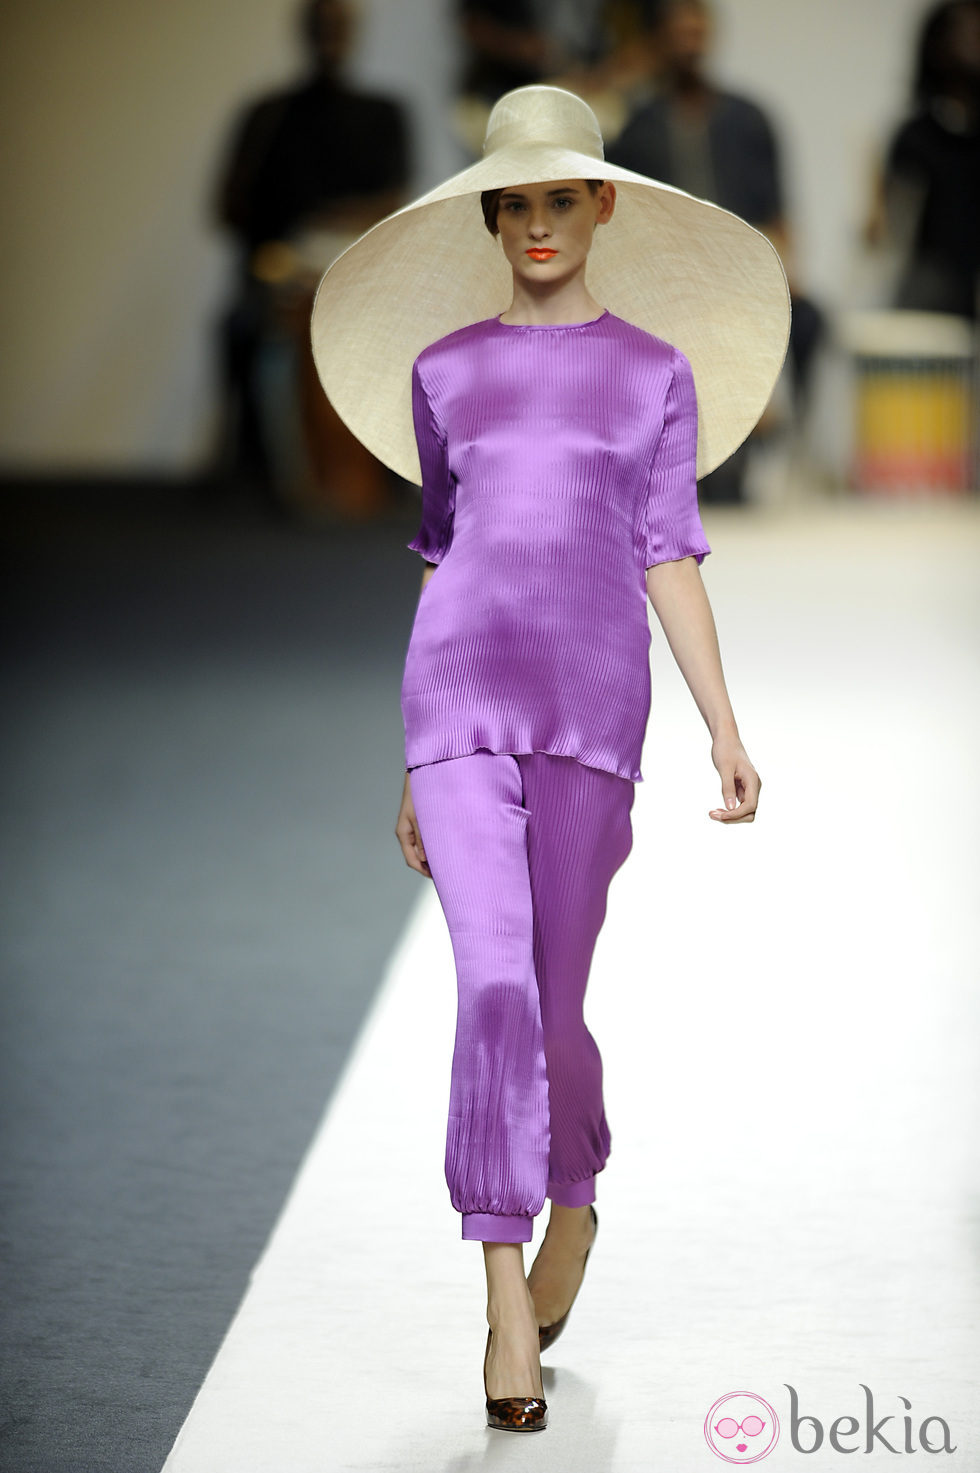 Vestido largo violeta con sombrero de Duyos para primavera 2012 en Cibeles 2011